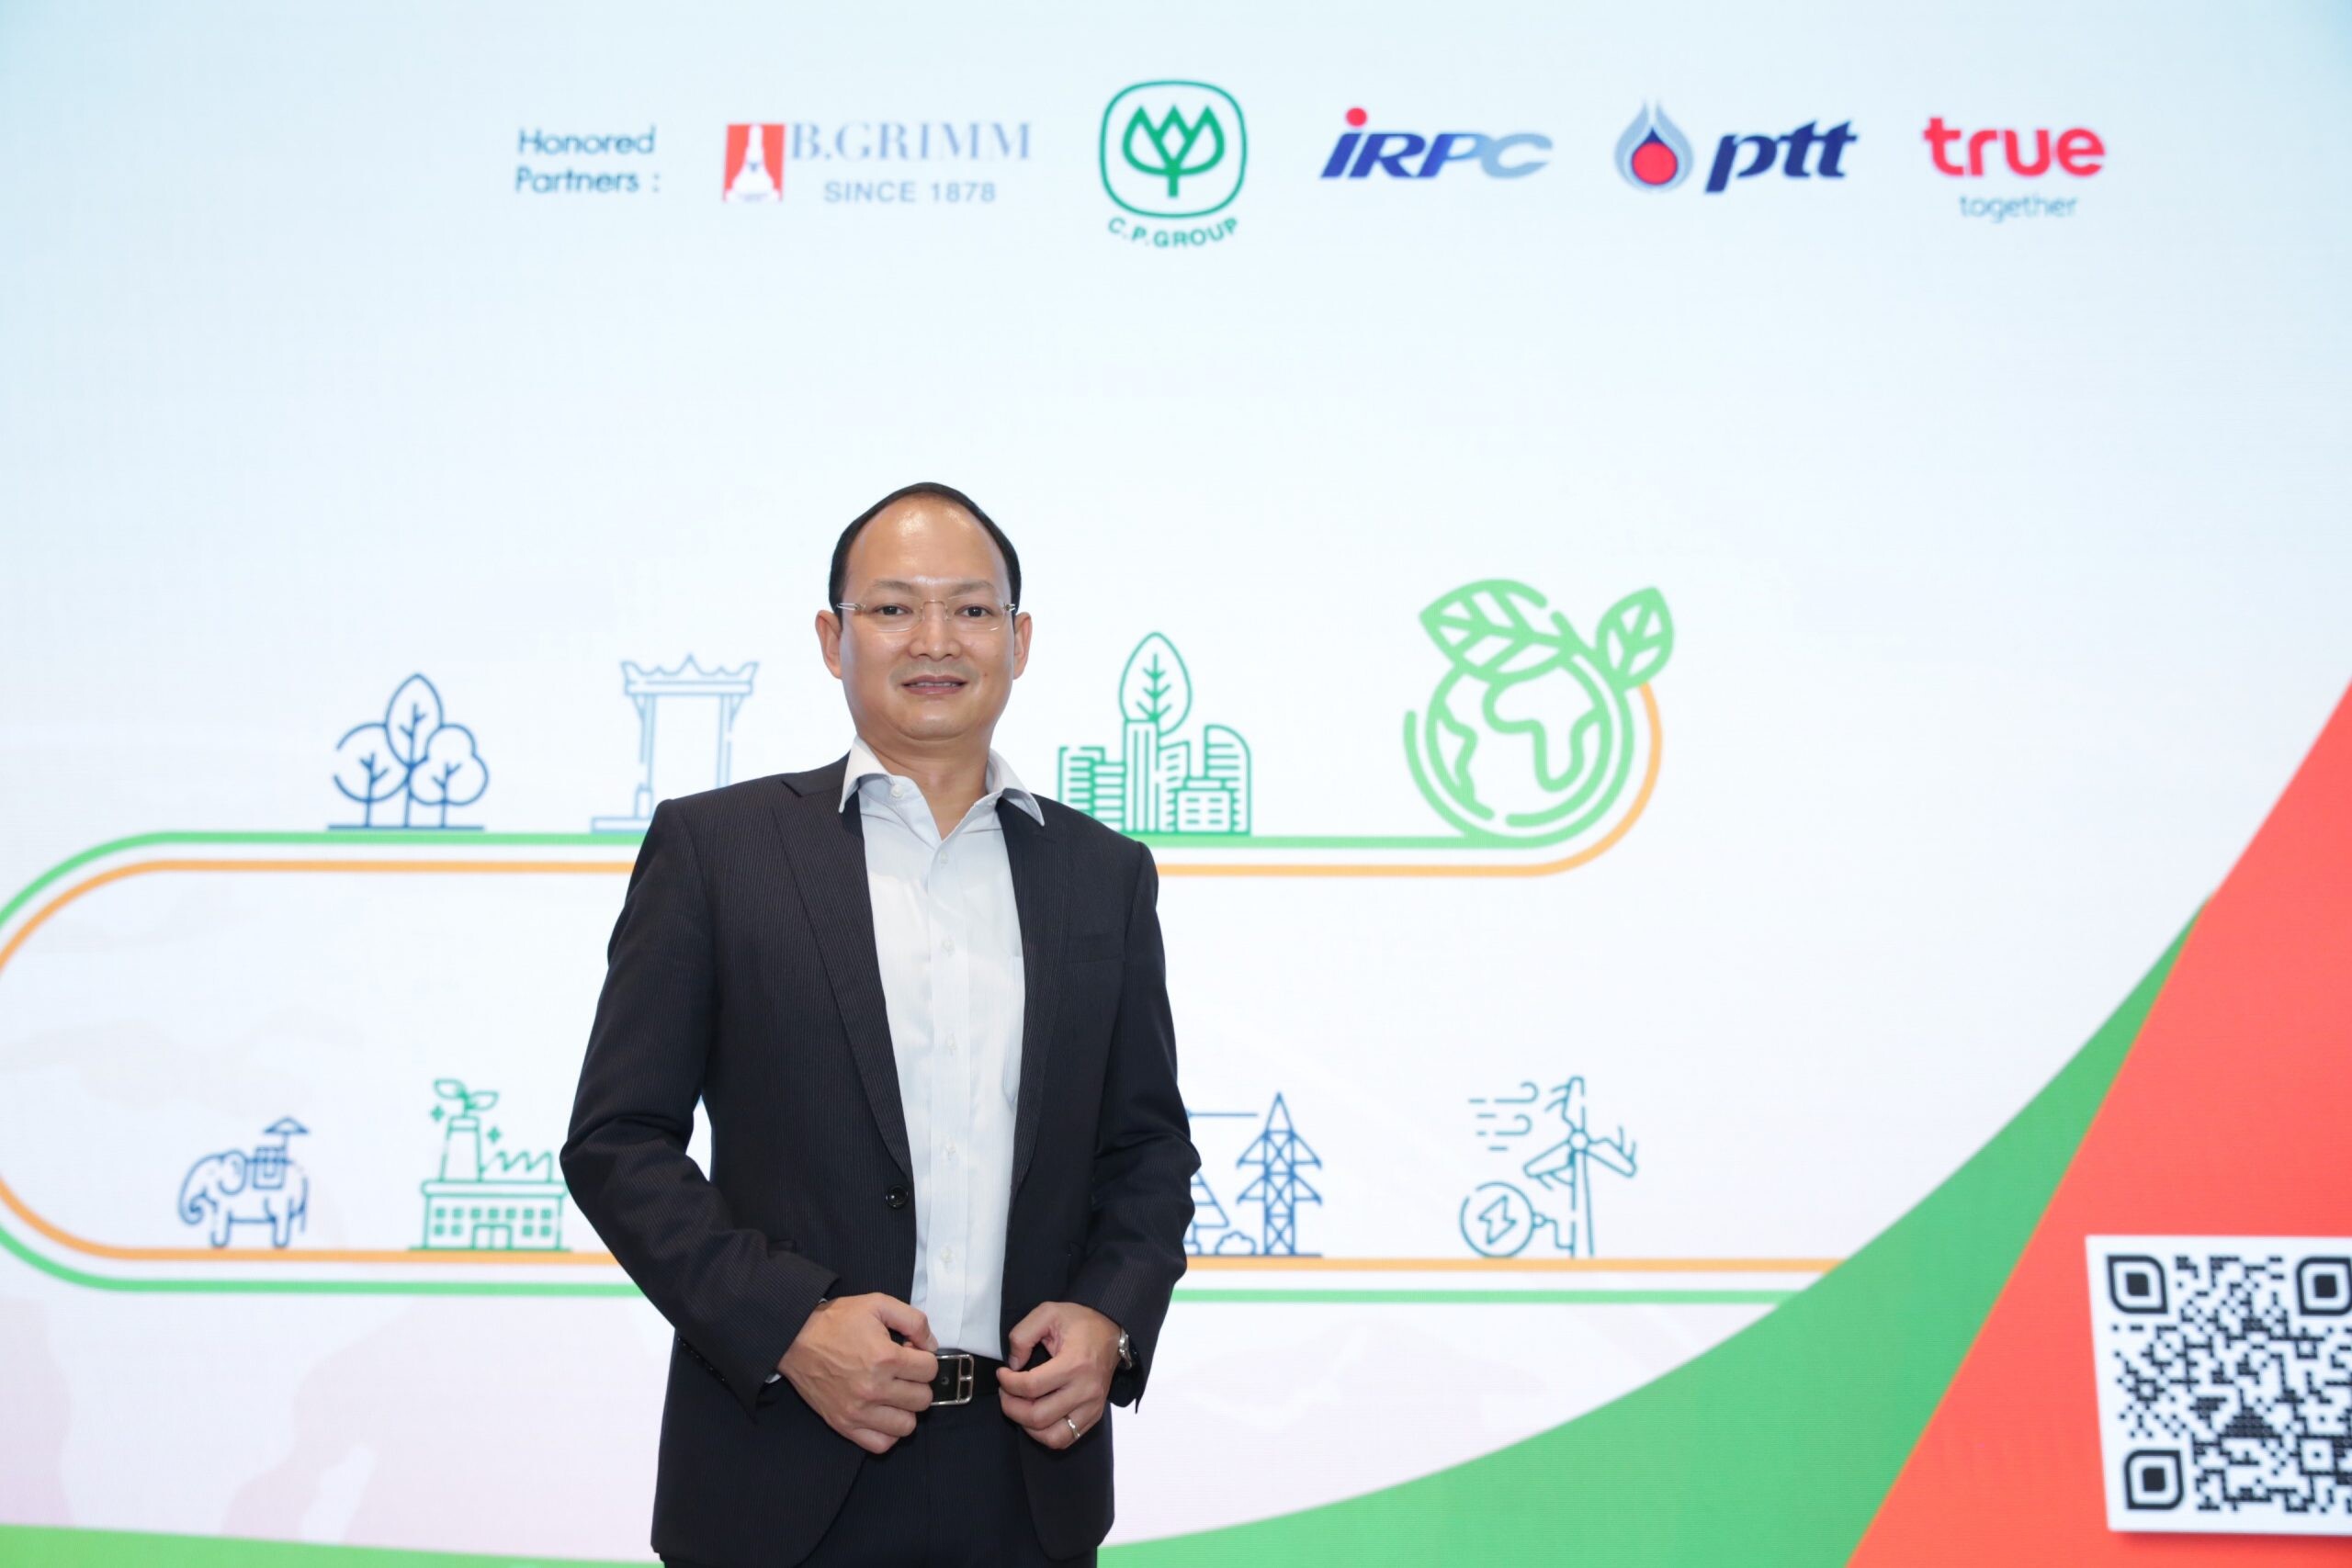 เครือซีพี เร่งเครื่องเดินแผนสู่เป้าหมาย Net Zero สร้างความยั่งยืน รุกจับมือสตาร์ทอัพหานวัตกรรม-สร้างโซลูชั่นช่วยลดคาร์บอน ในเวที "Decarbonize Thailand Startup Sandbox"